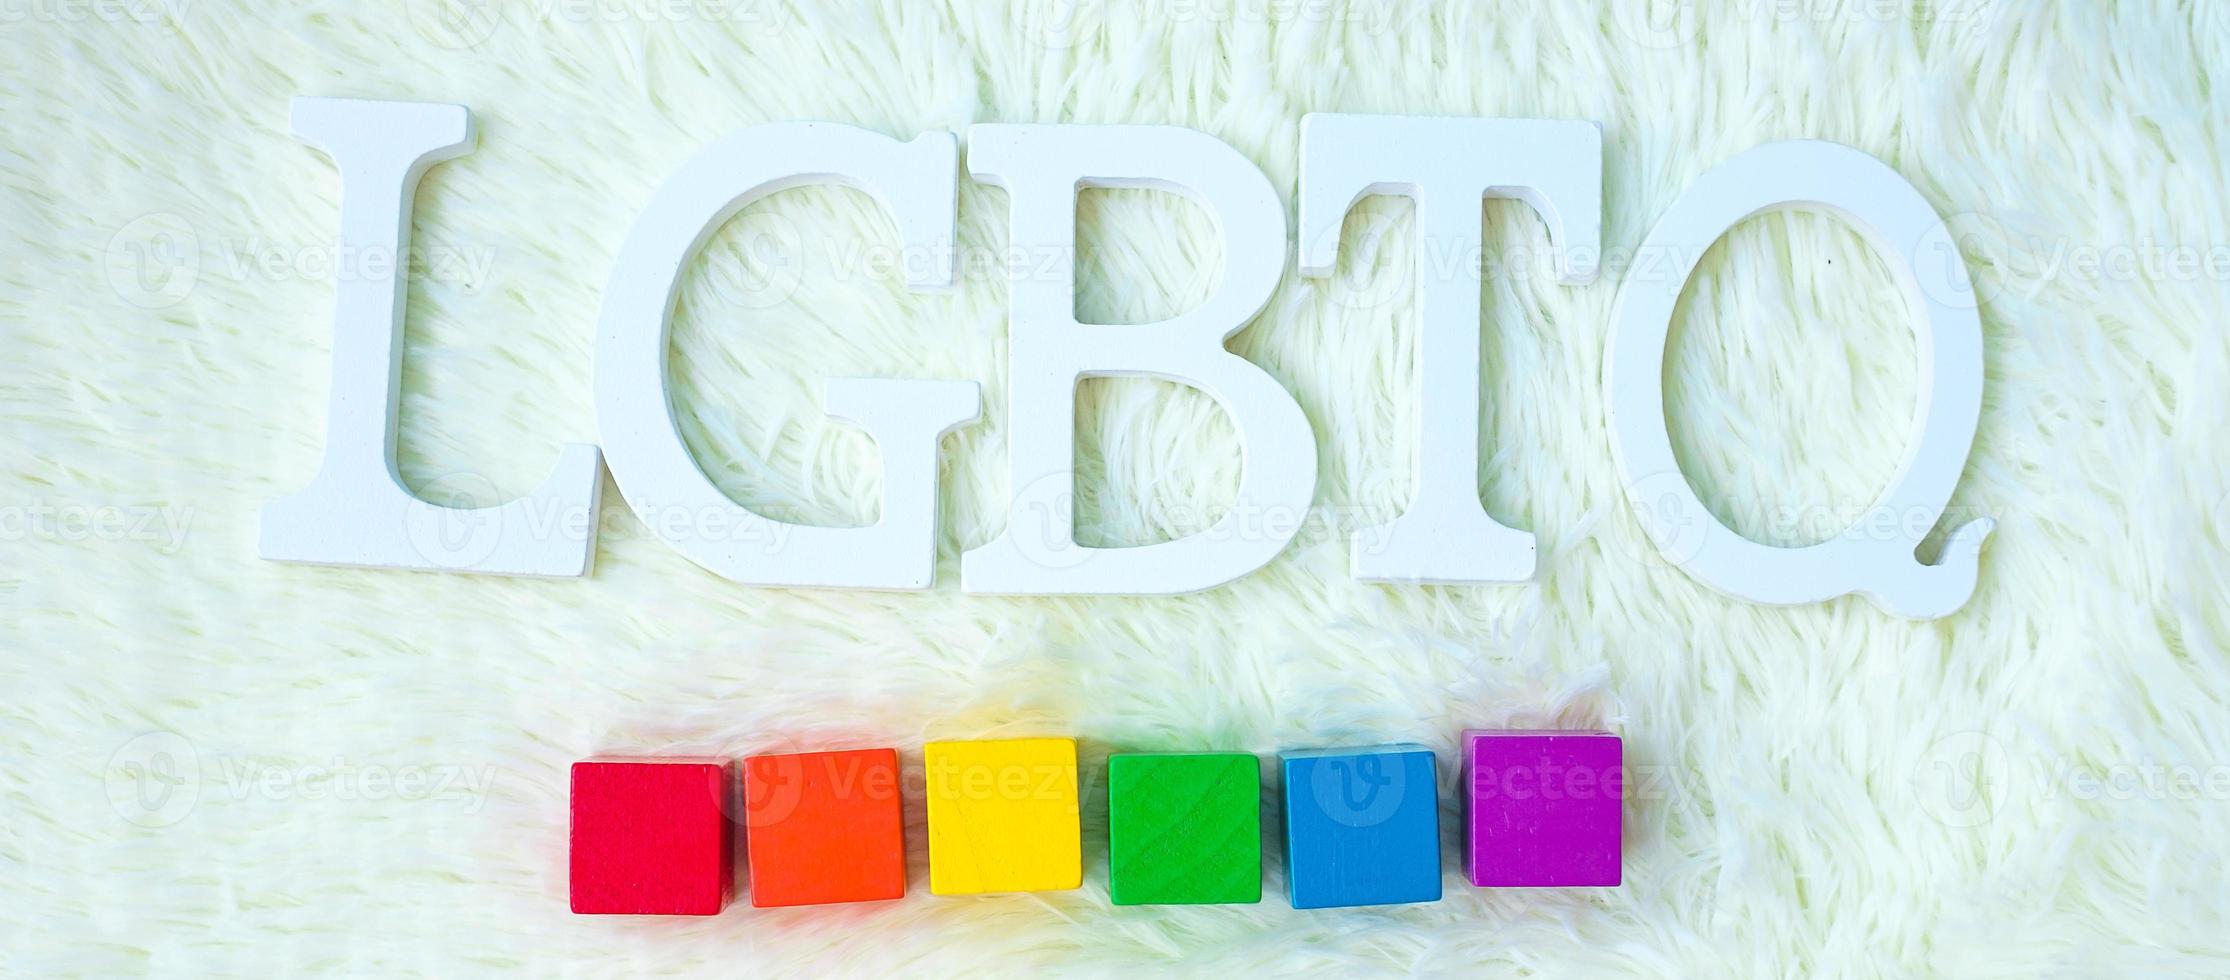 bloc arc-en-ciel lgbtq sur fond blanc. soutenir la communauté lesbienne, gay, bisexuelle, transgenre et queer et le concept du mois de la fierté photo